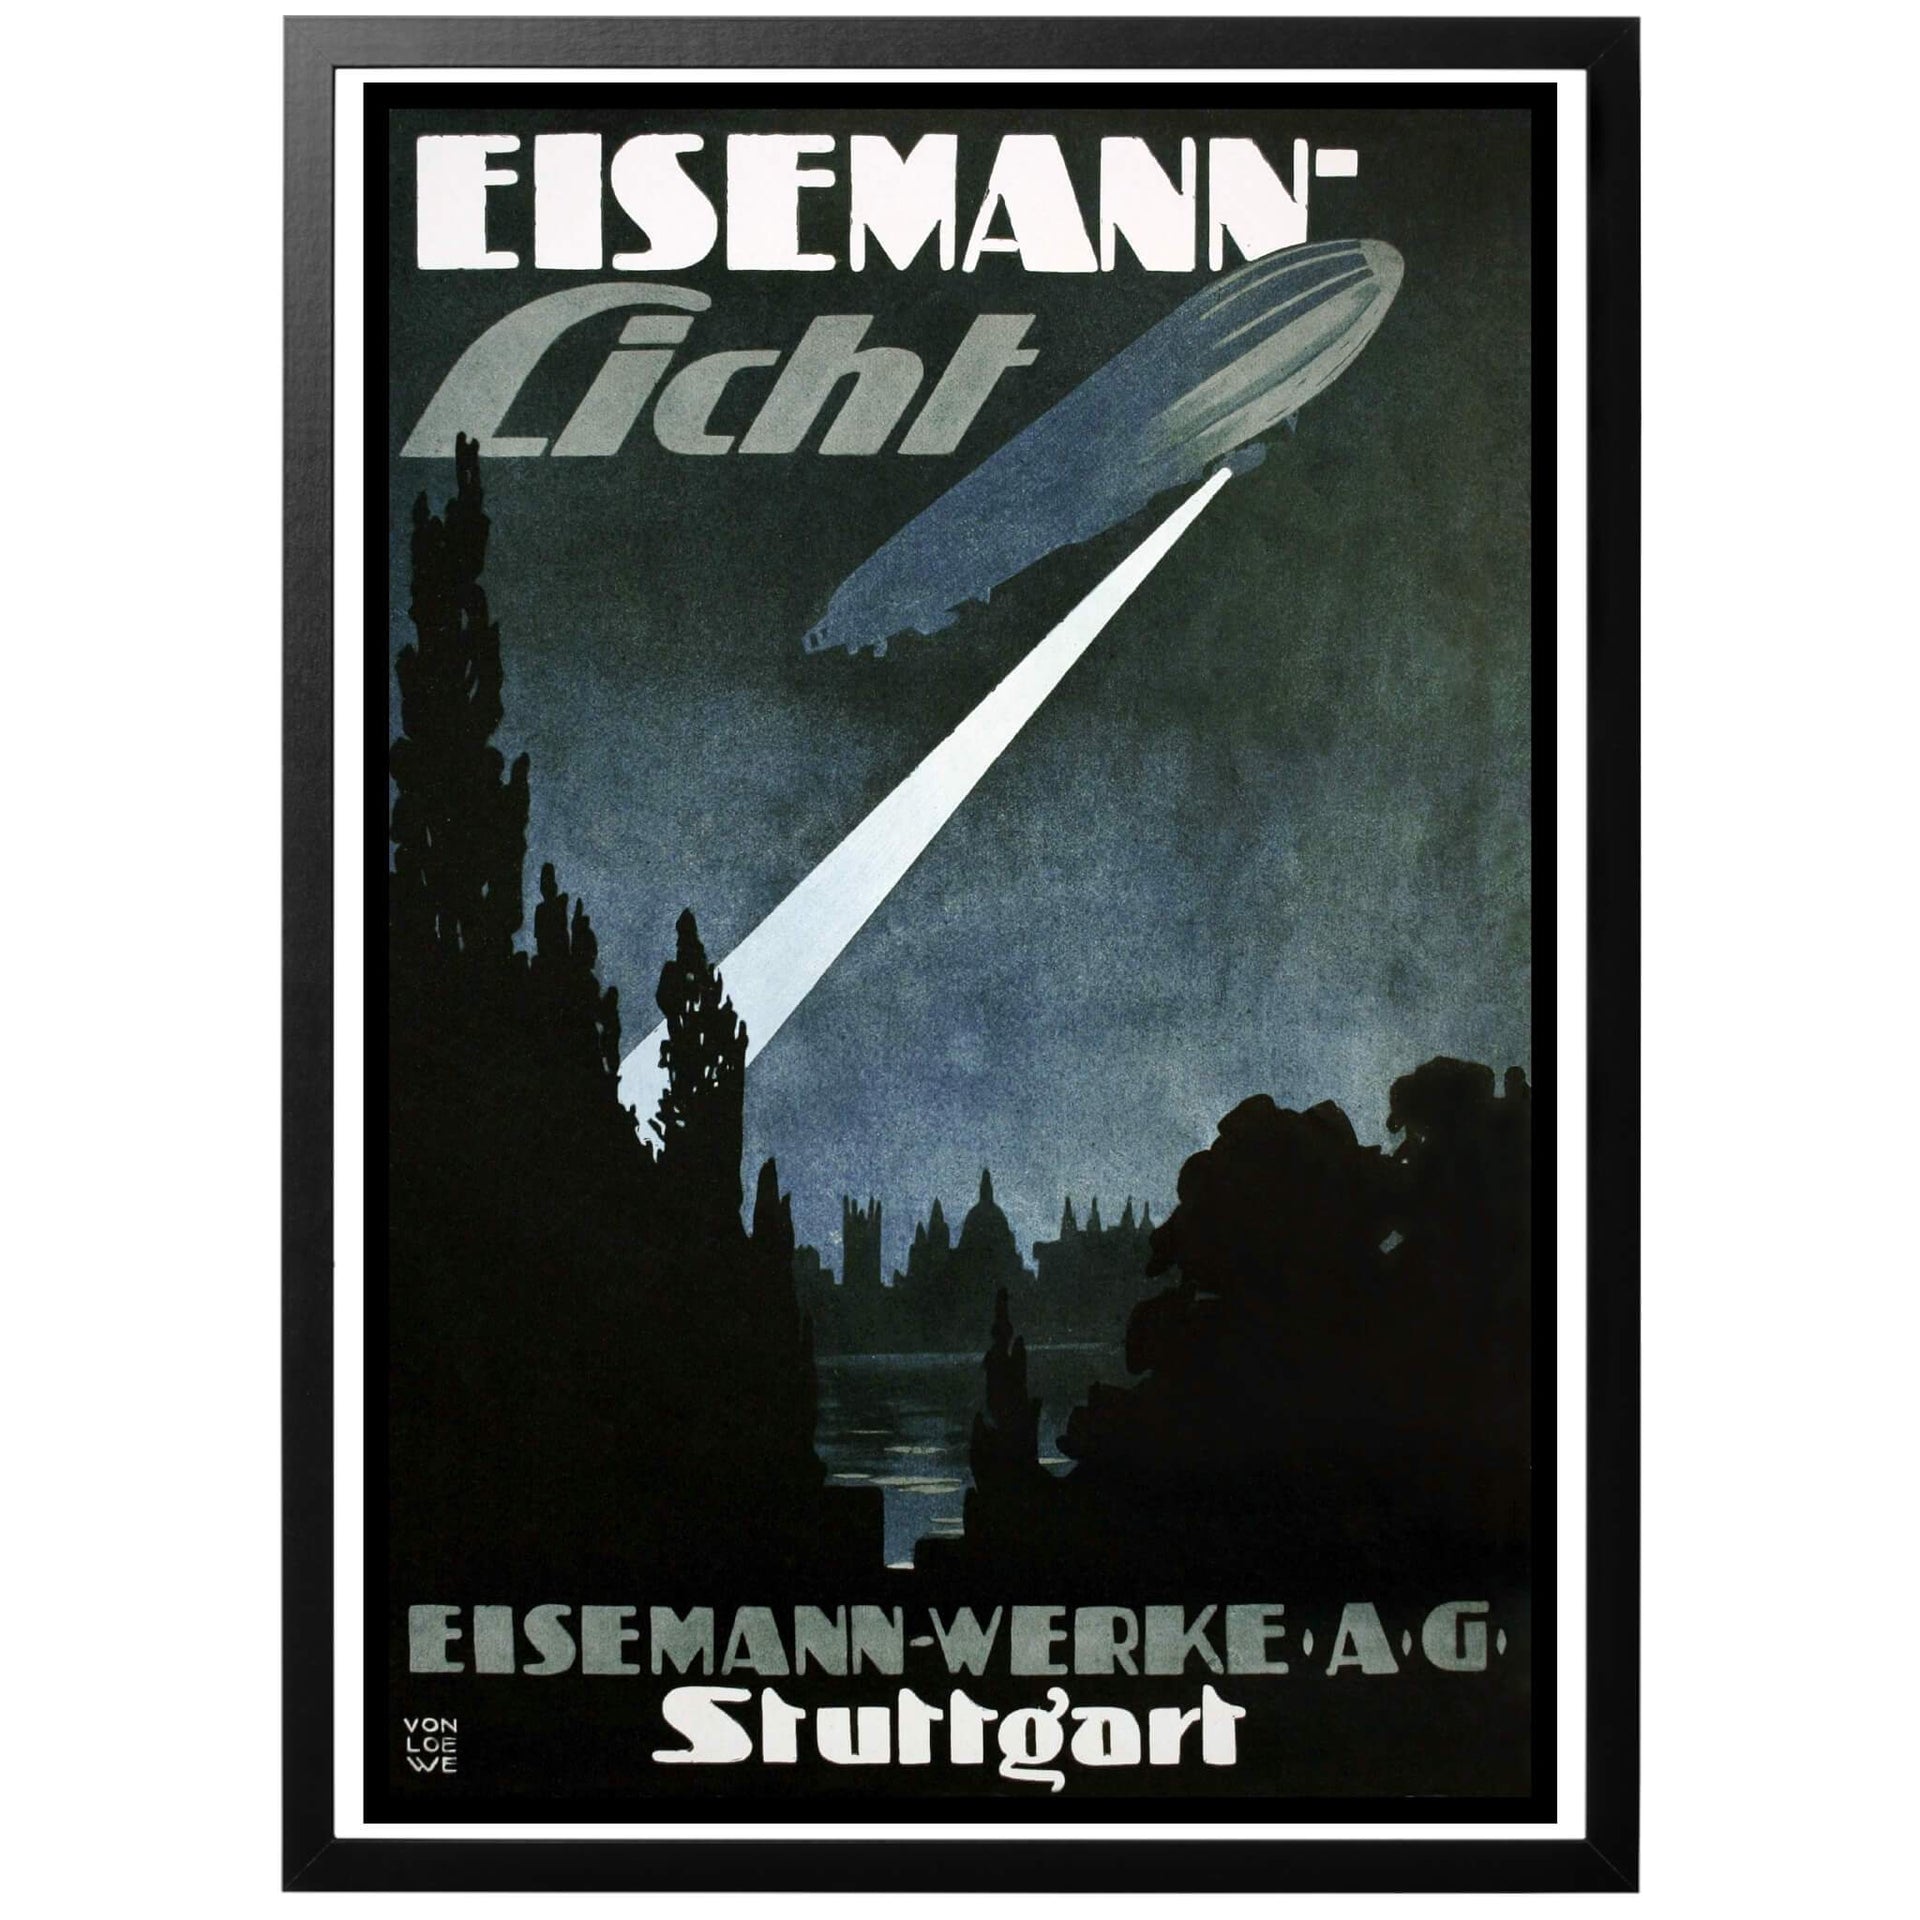 Eisemann-Licht Eisemann-Werke AG - Tysk WWI affisch från 1916. Reklam för tillverkaren Eisemann-Werke AG och deras kraftfulla strålkastare, här monterad på en vacker zeppelinare. I bakgrunden kan man skymta siluetten av utmärkande byggnader i Stuttgart. Fin vintageposter med ett spännande, nästan futuristiskt motiv.